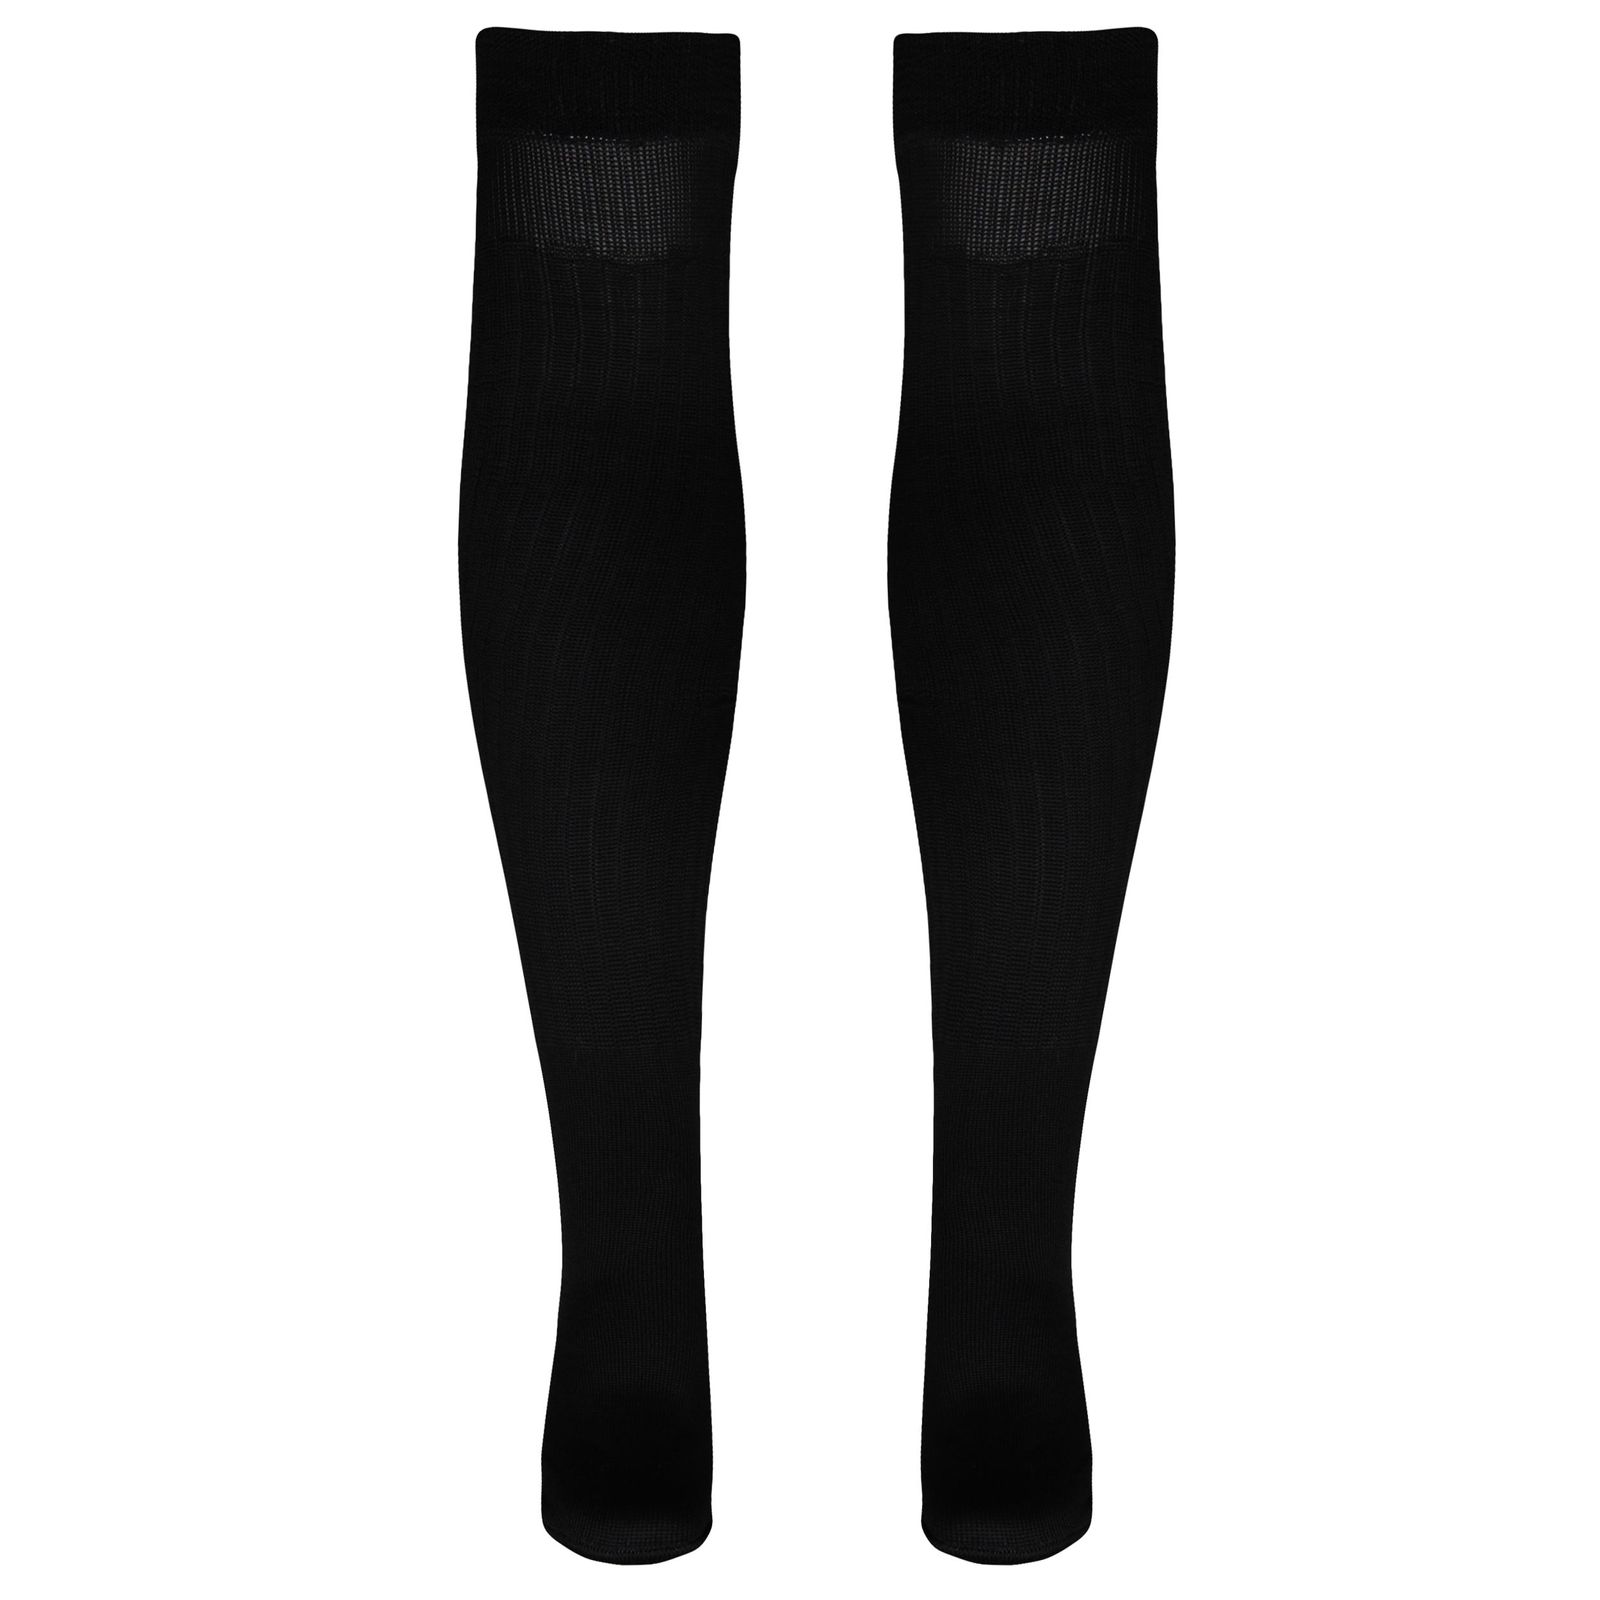 جوراب ساق بلند ورزشی  زنانه ماییلدا مدل 4185 رنگ مشکی -  - 1